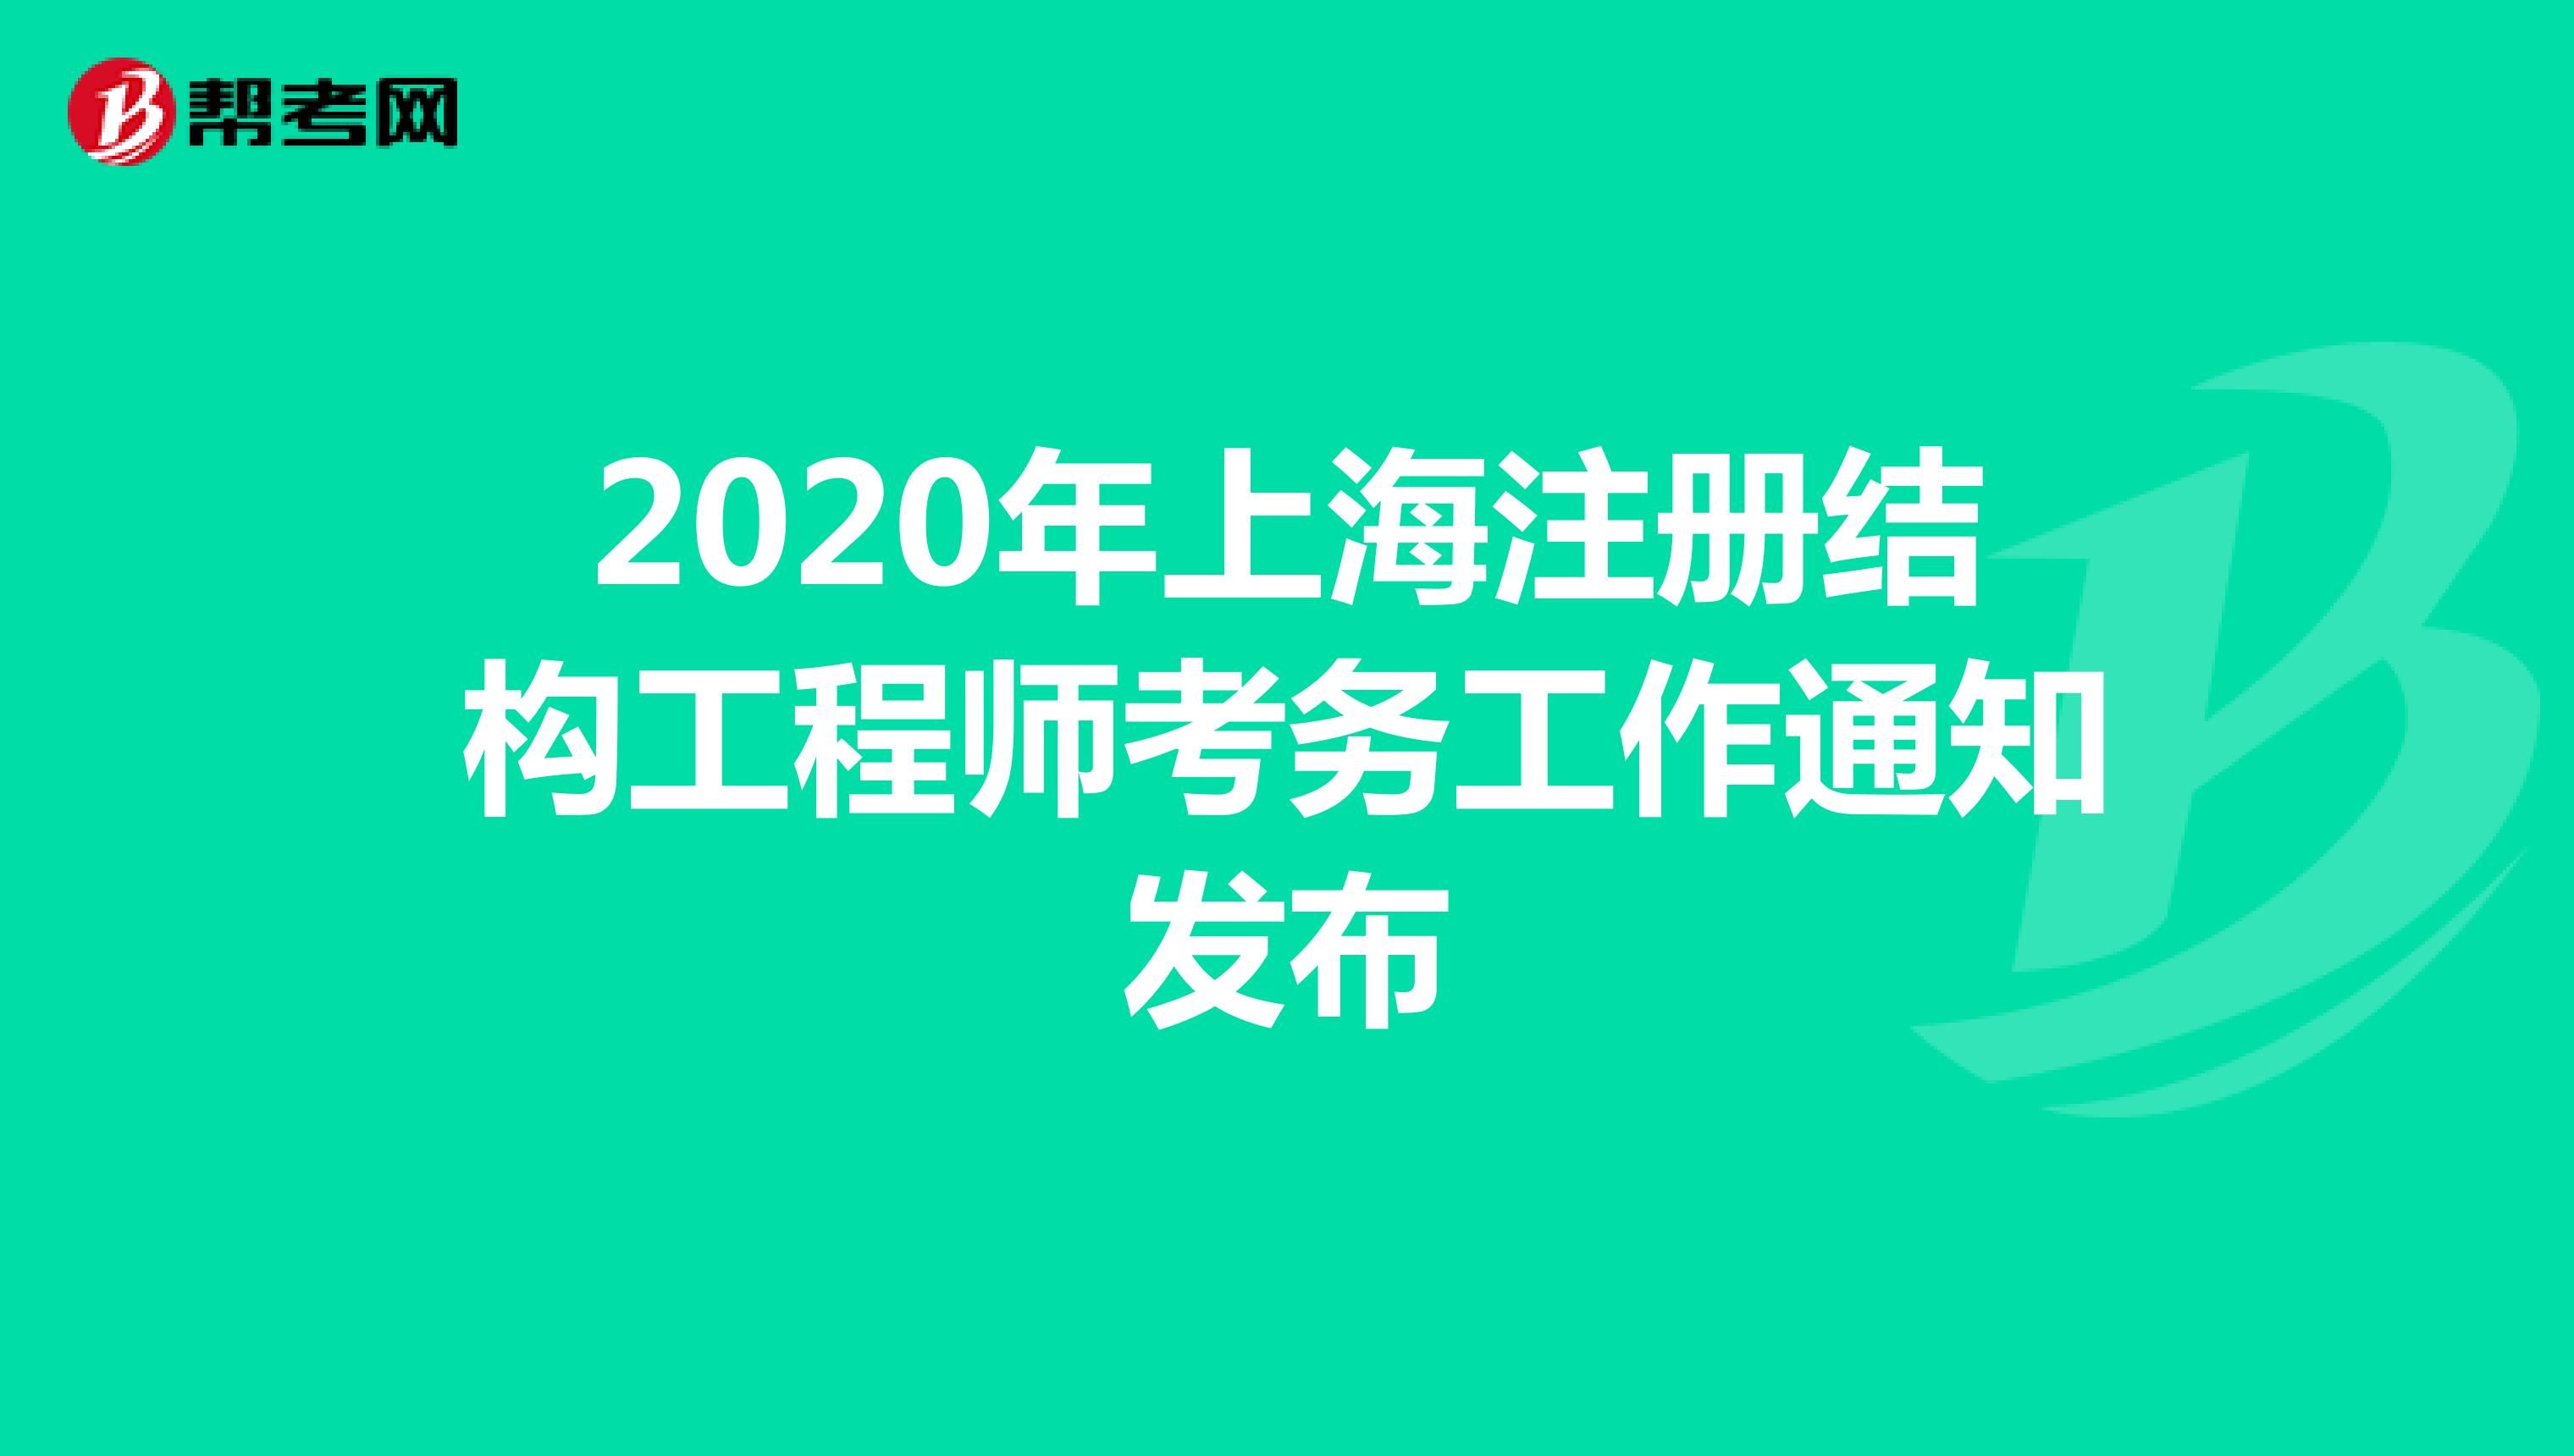 2020年上海注册结构工程师考务工作通知发布